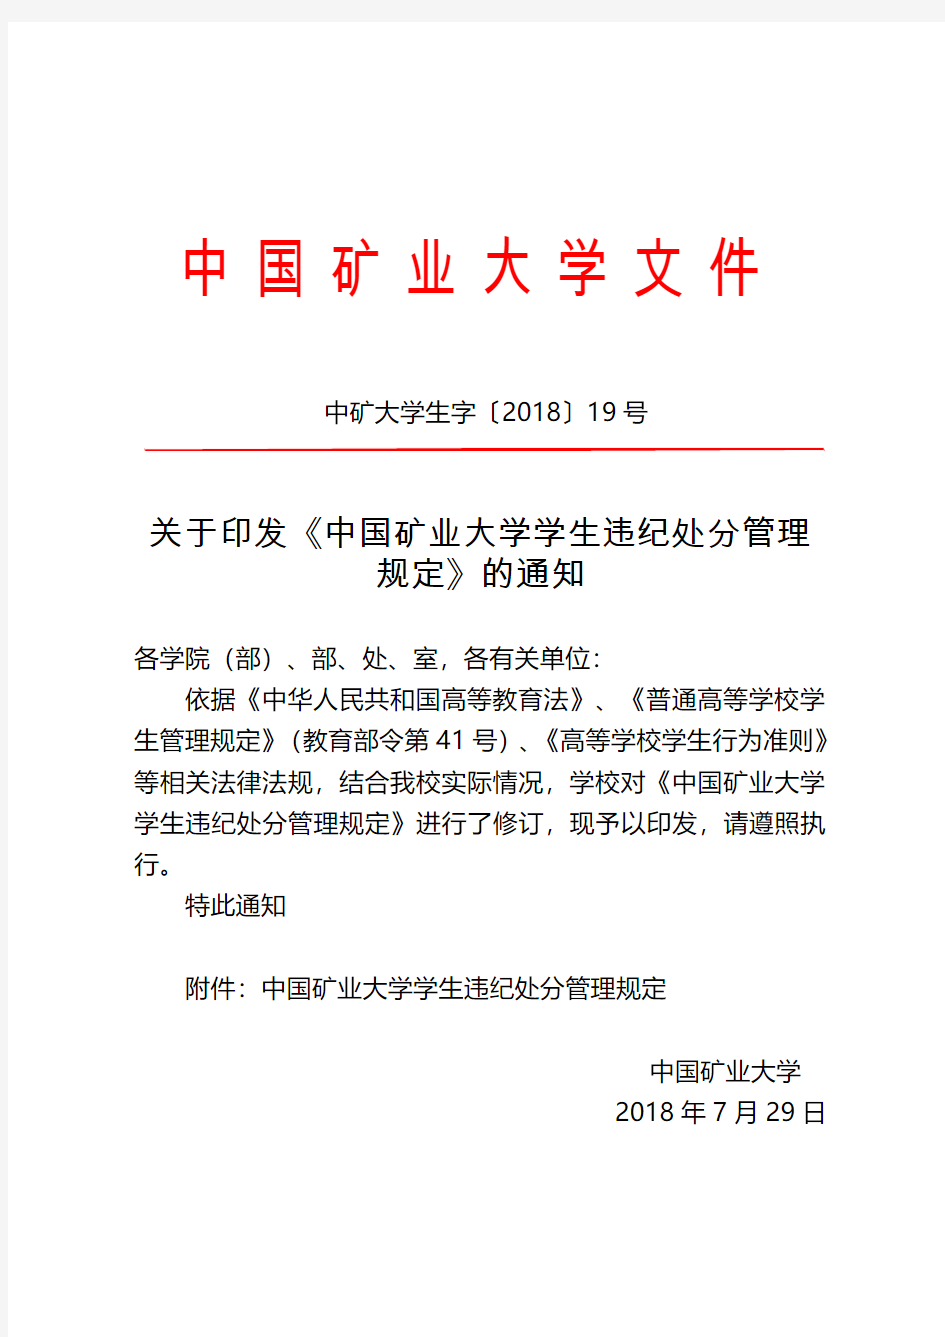 中国矿业大学学生违纪处分管理规定-中国矿业大学保卫处